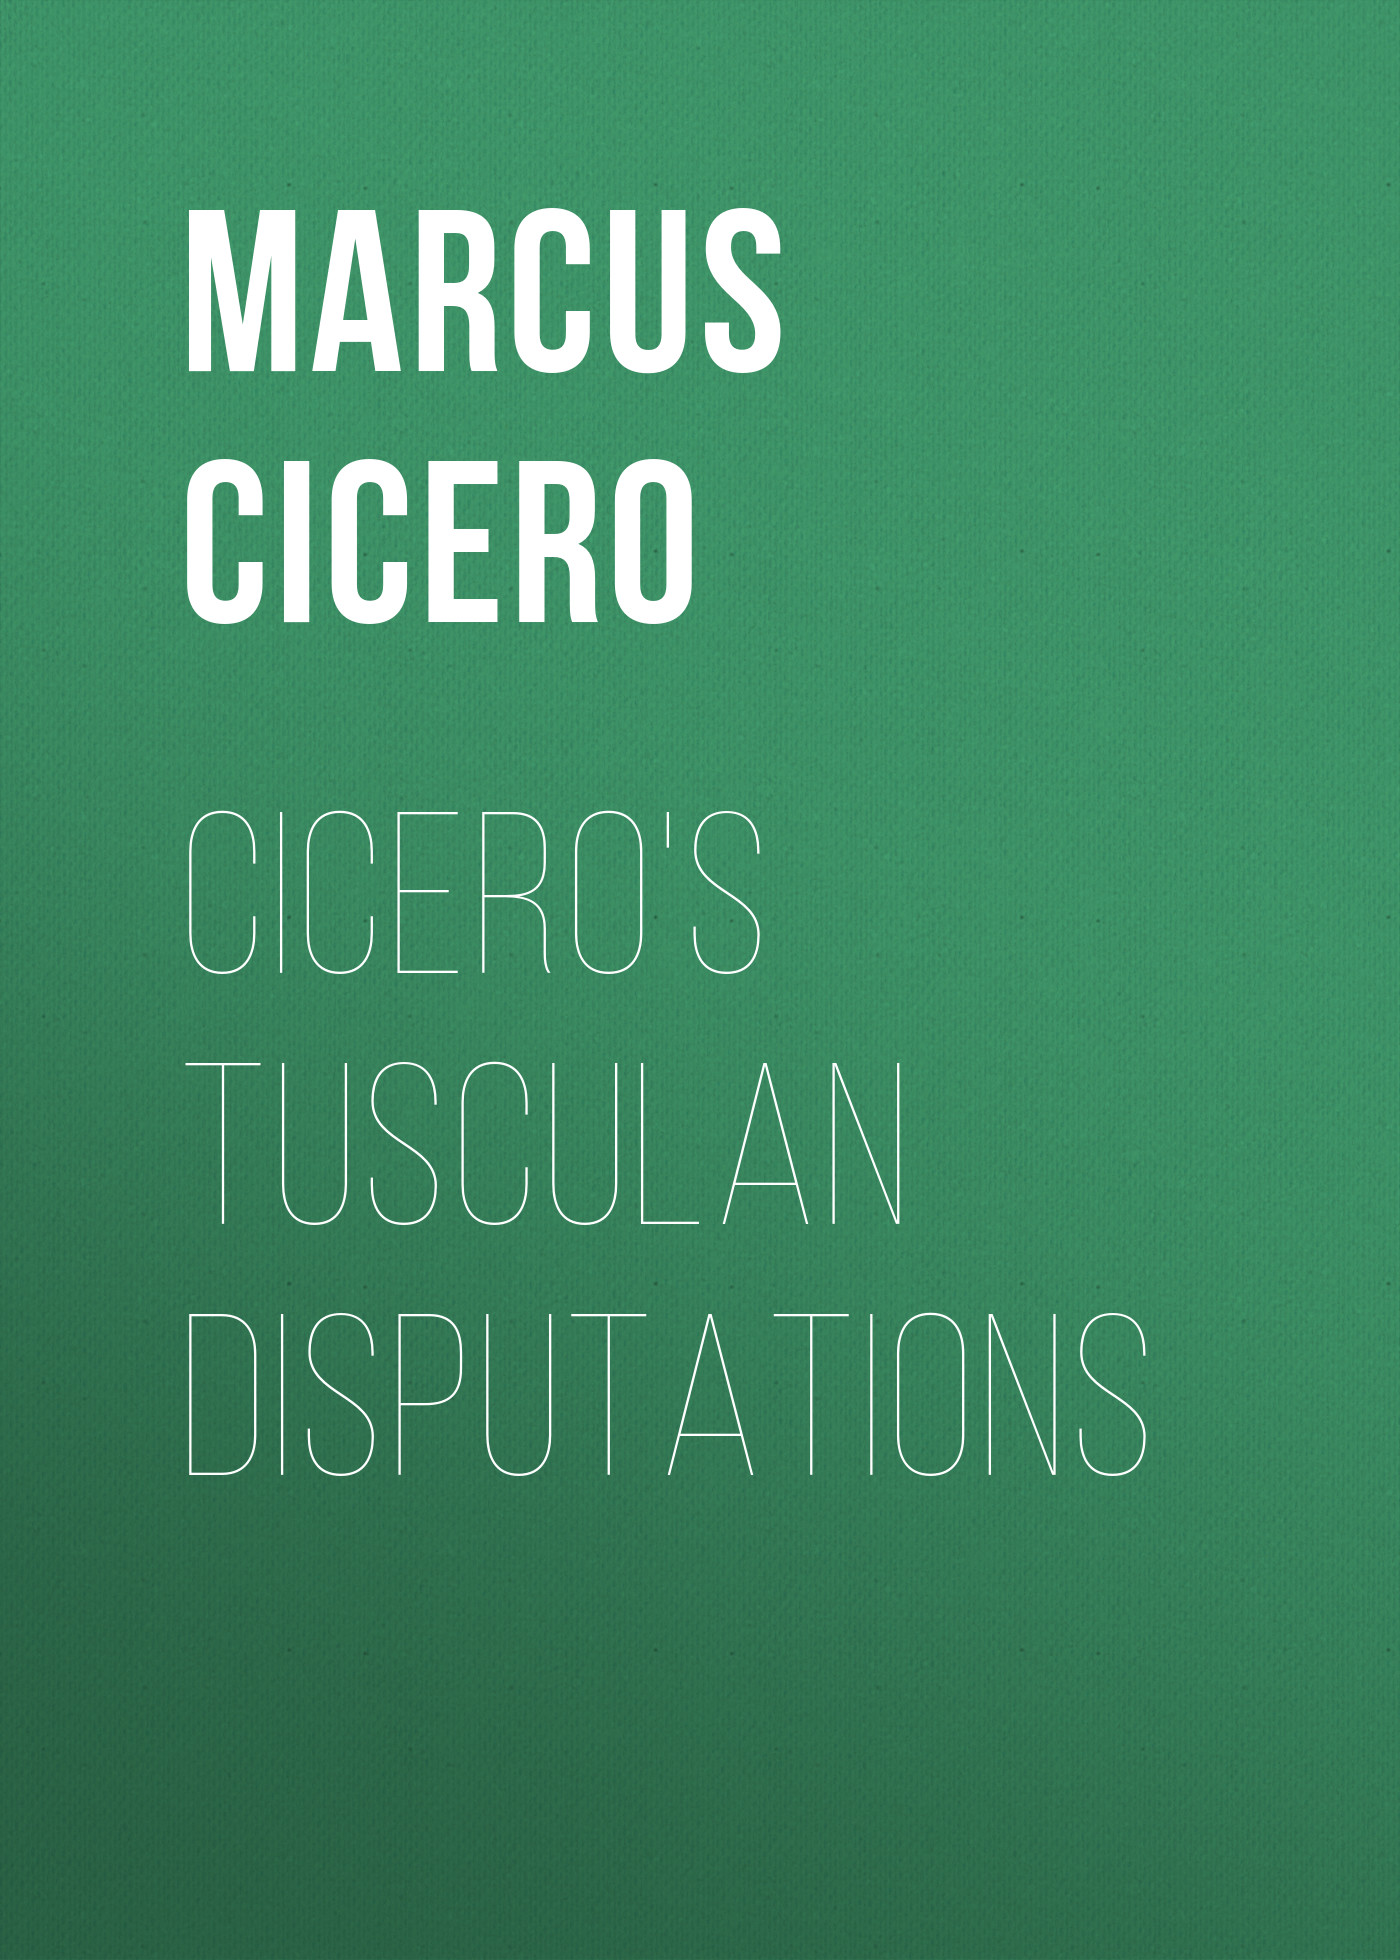 Книга Cicero's Tusculan Disputations из серии , созданная Marcus Cicero, может относится к жанру Зарубежная старинная литература, Философия, Зарубежная образовательная литература. Стоимость электронной книги Cicero's Tusculan Disputations с идентификатором 35007409 составляет 0 руб.